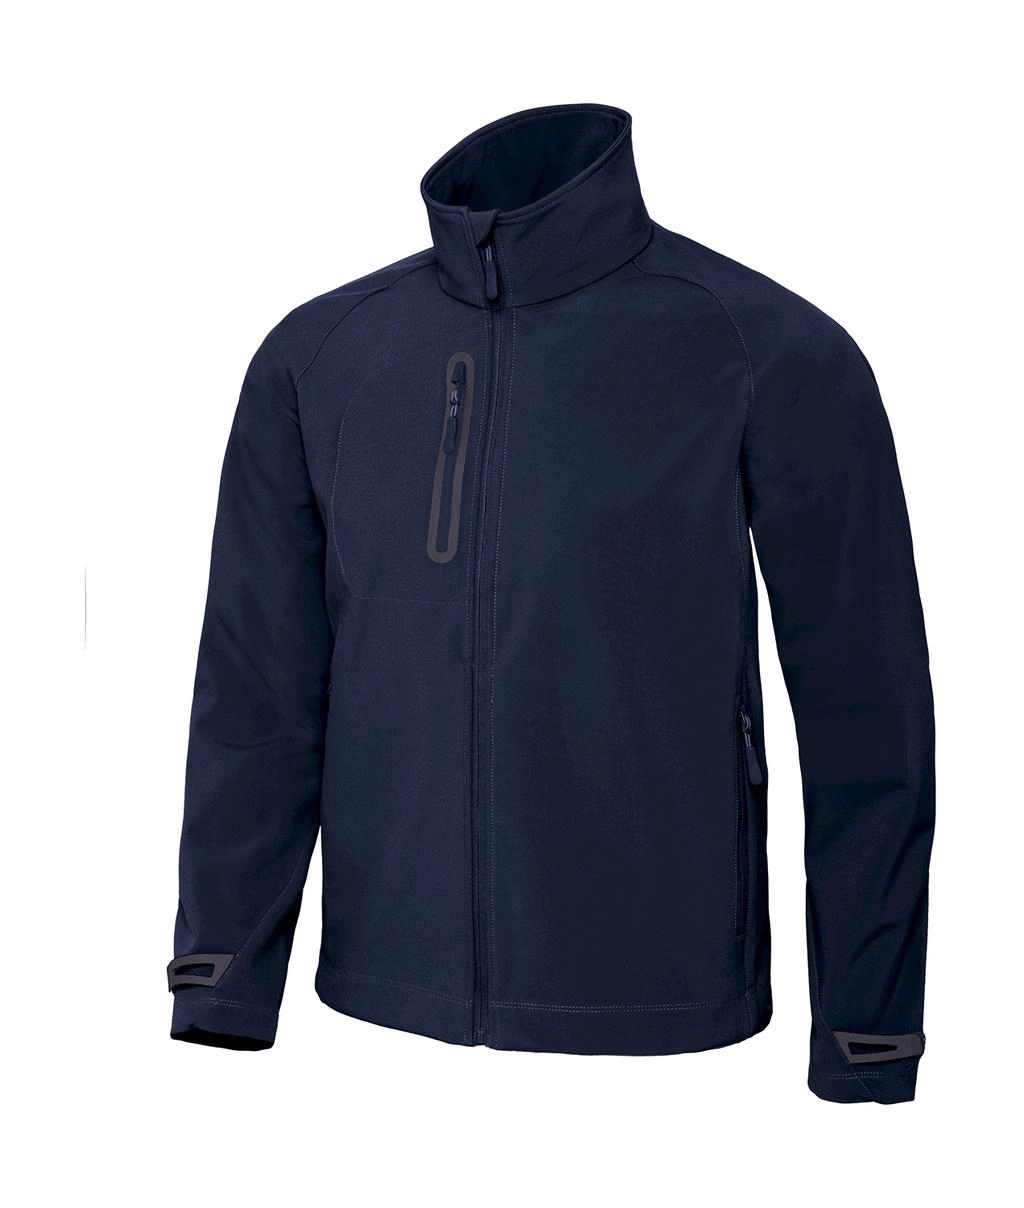 X-Lite Softshell/men Jacket zum Besticken und Bedrucken in der Farbe Navy mit Ihren Logo, Schriftzug oder Motiv.